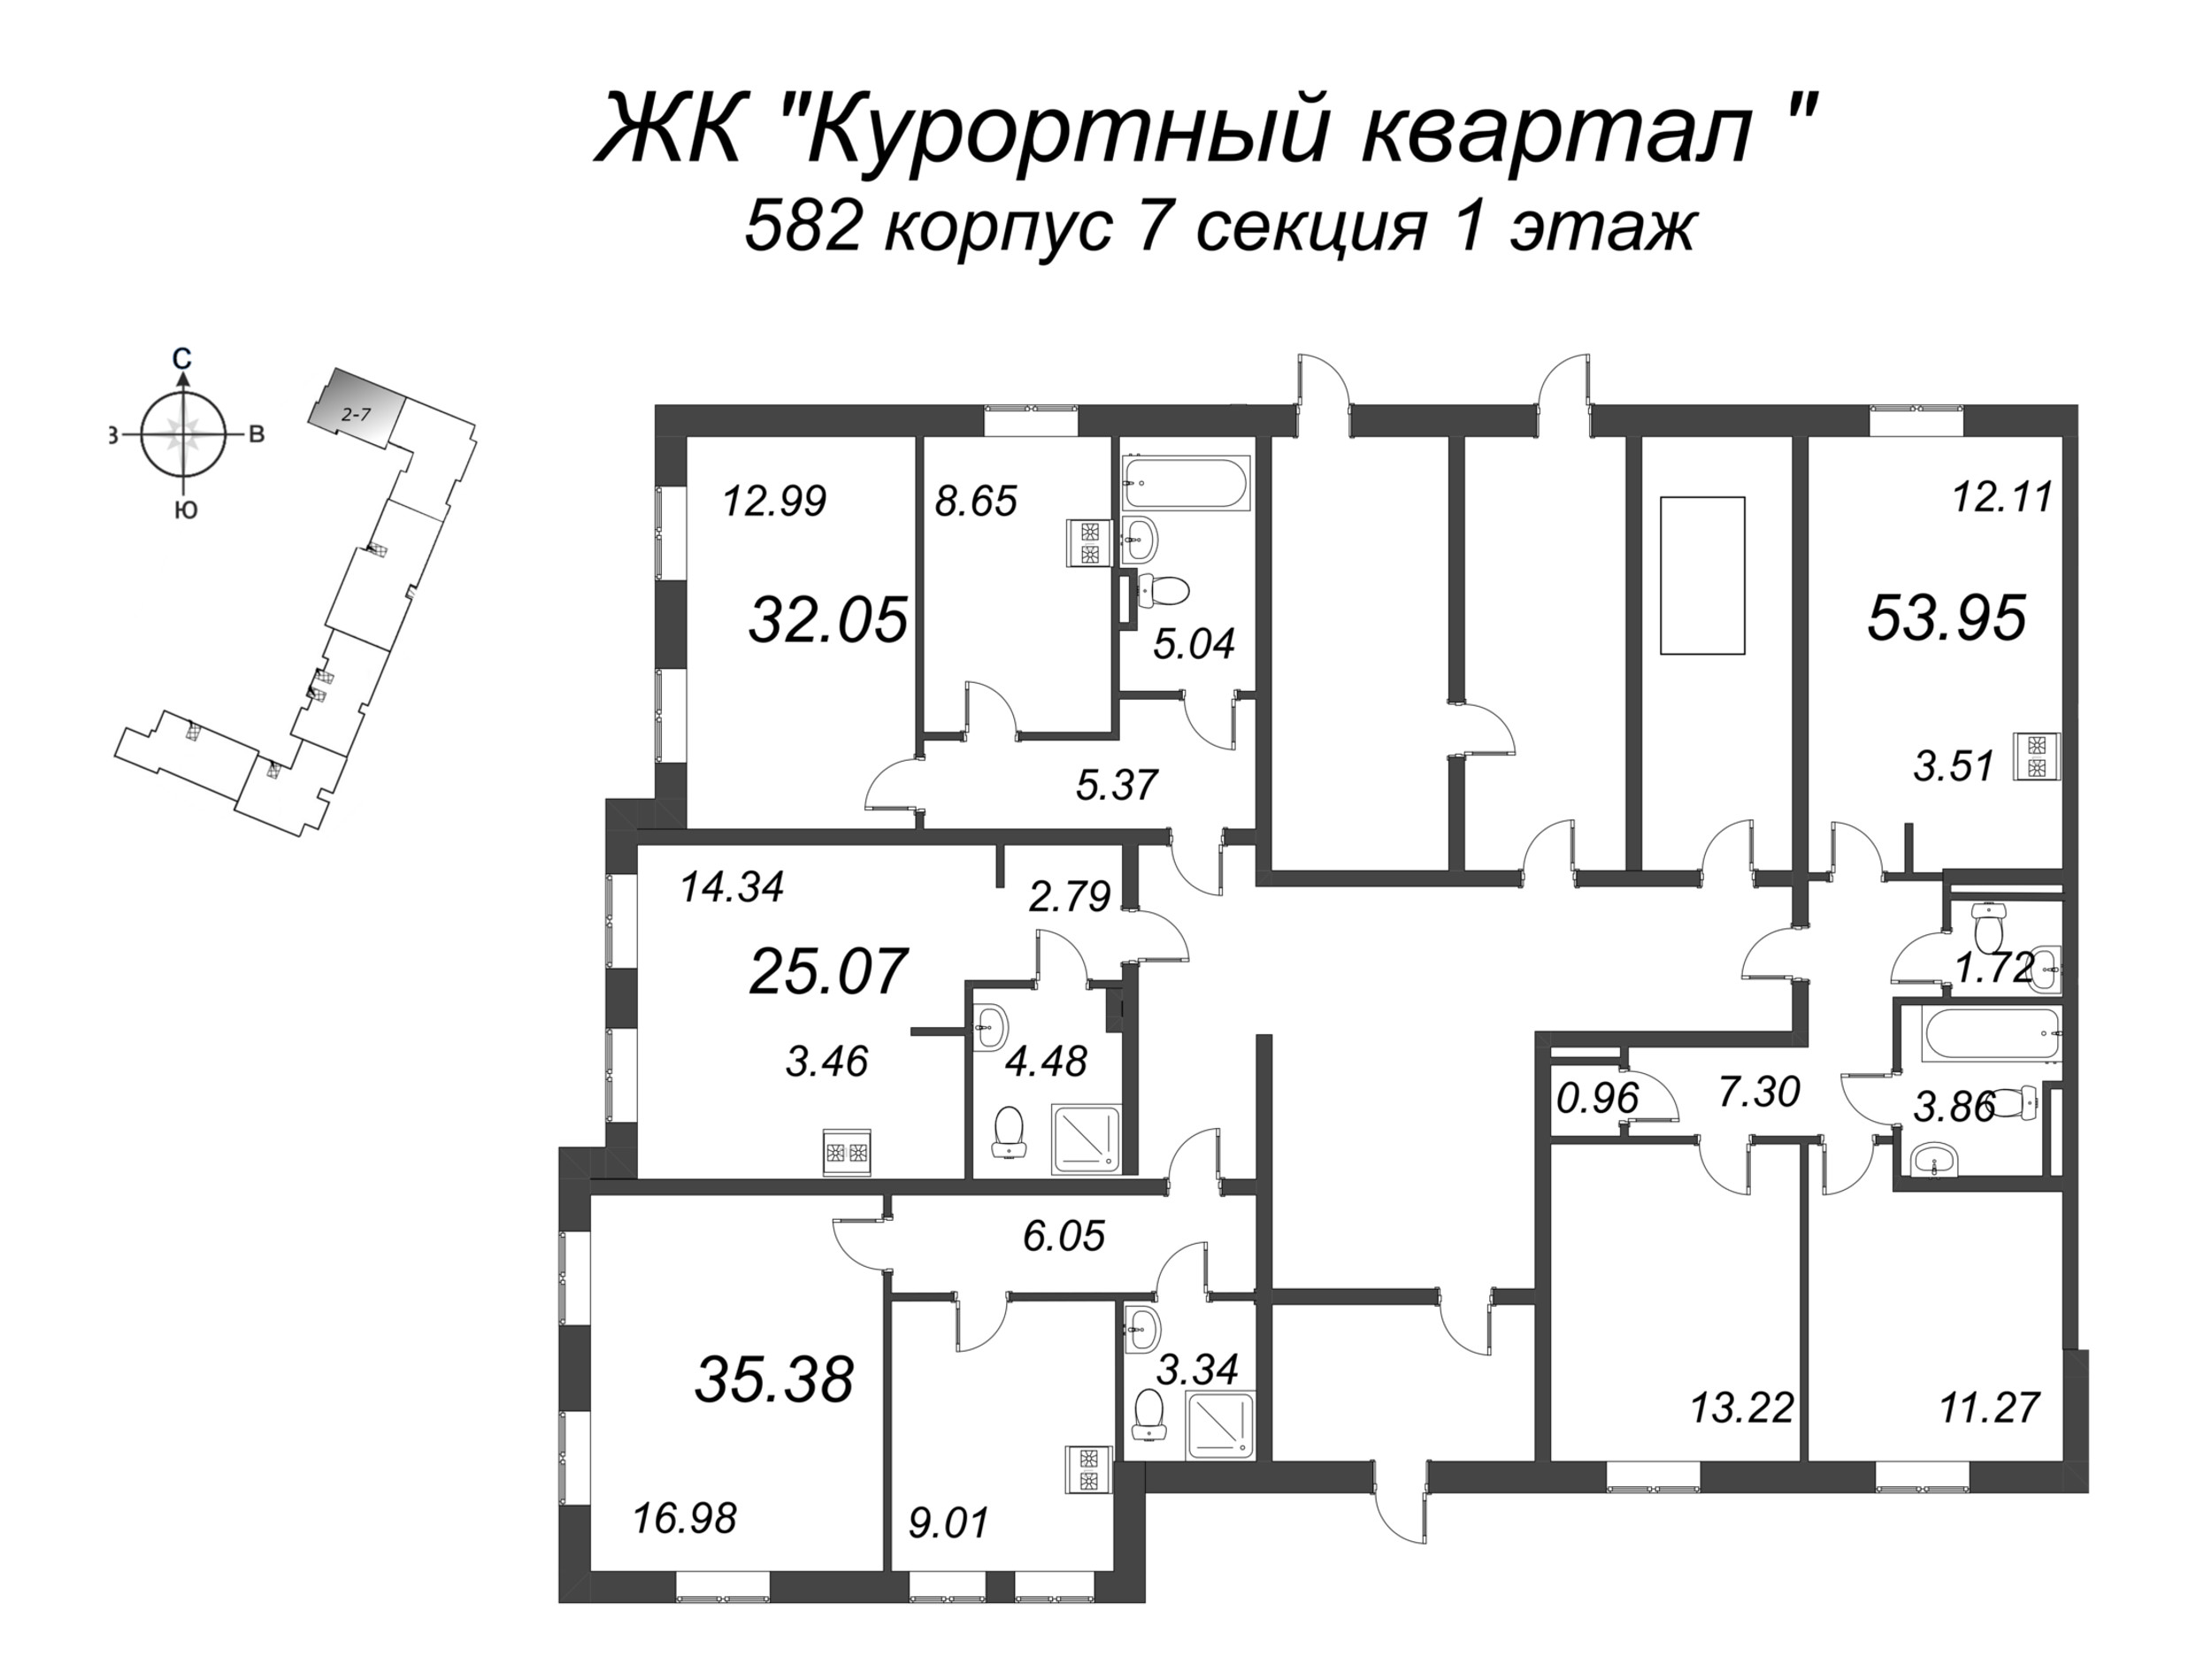 Квартира-студия, 25.07 м² в ЖК "Курортный Квартал" - планировка этажа